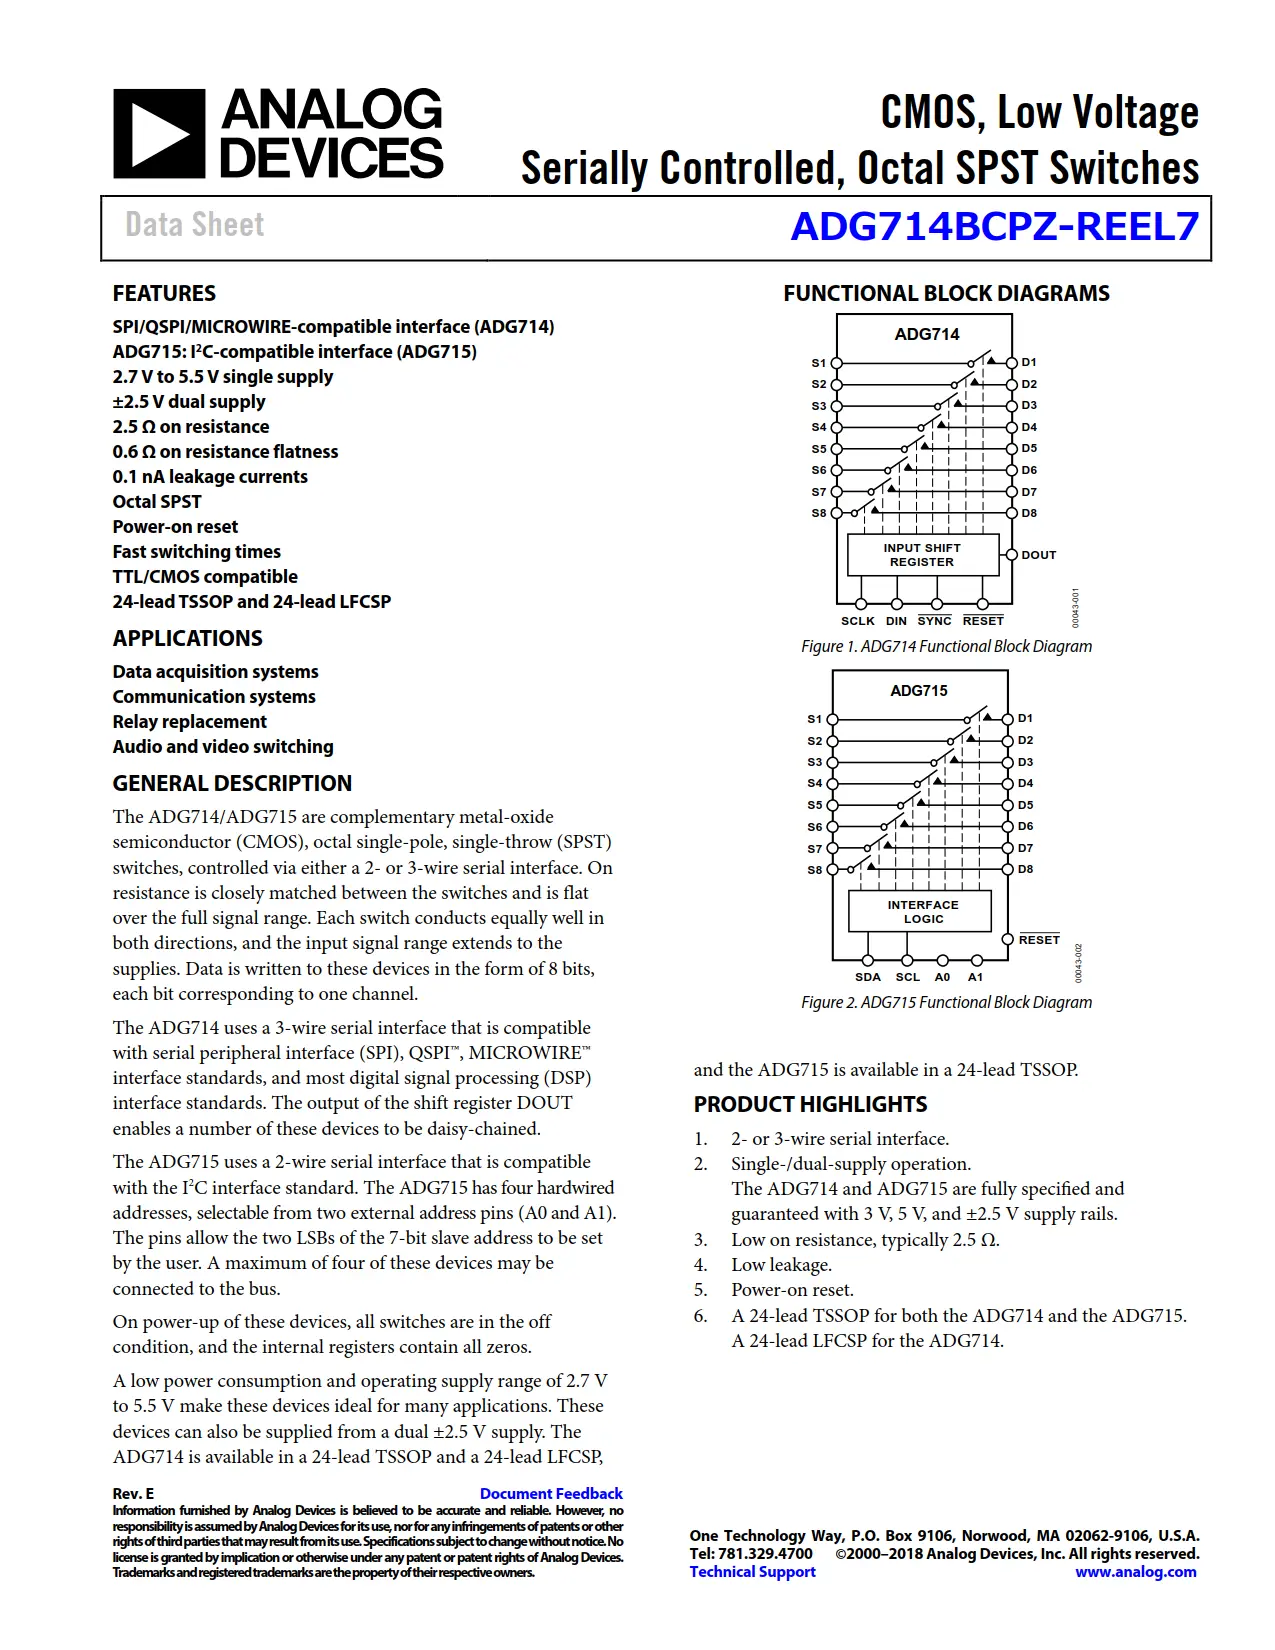 ADG714BCPZ-REEL7 DataSheet